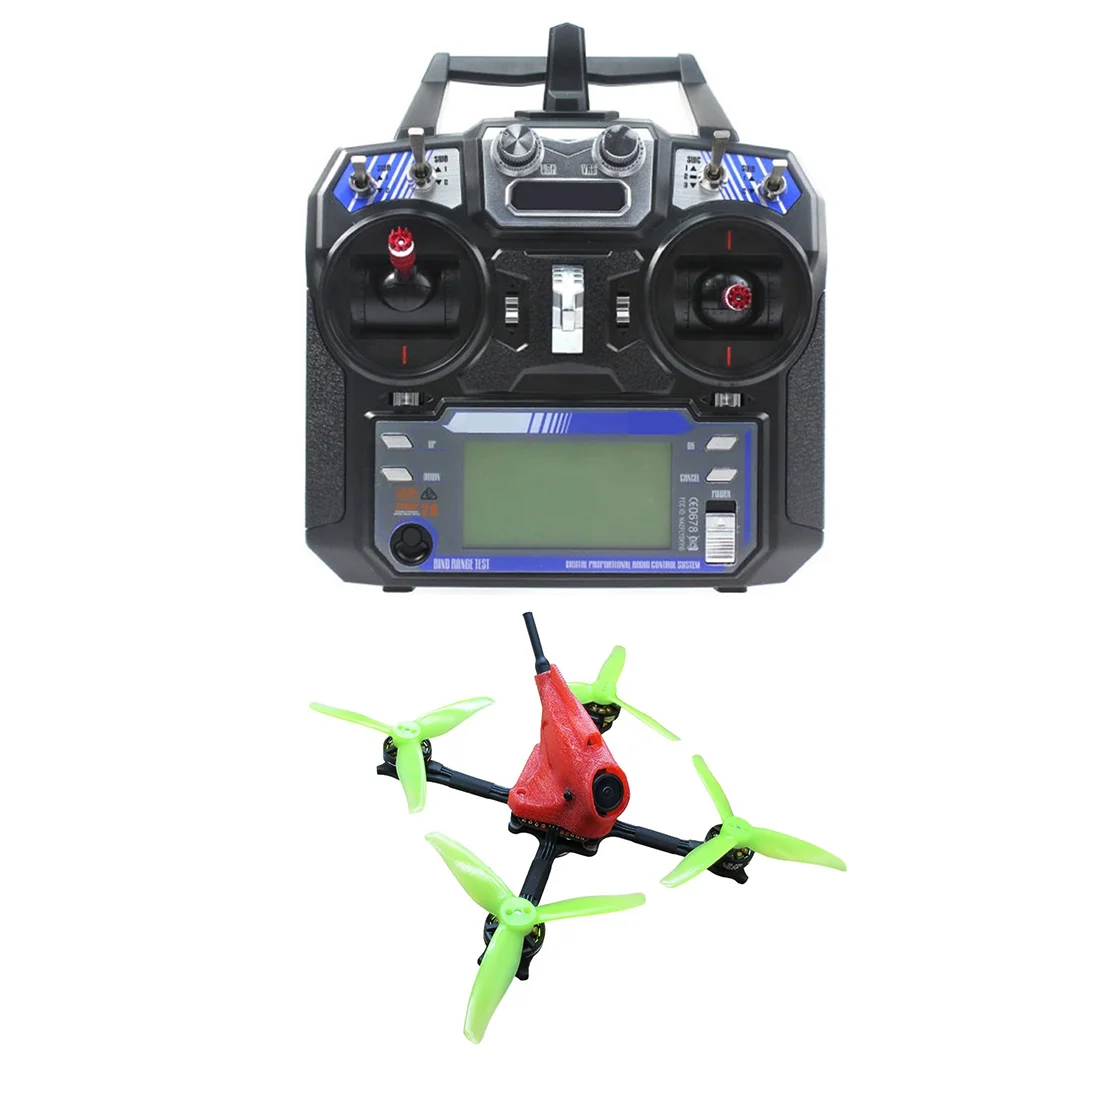 

NameLessRC PowerStick 3-4S FPV Racing Drone Quadcopter RTF w/ Flysky FS-I6 Remote Controller Nano2 Camera Nano400 VTX